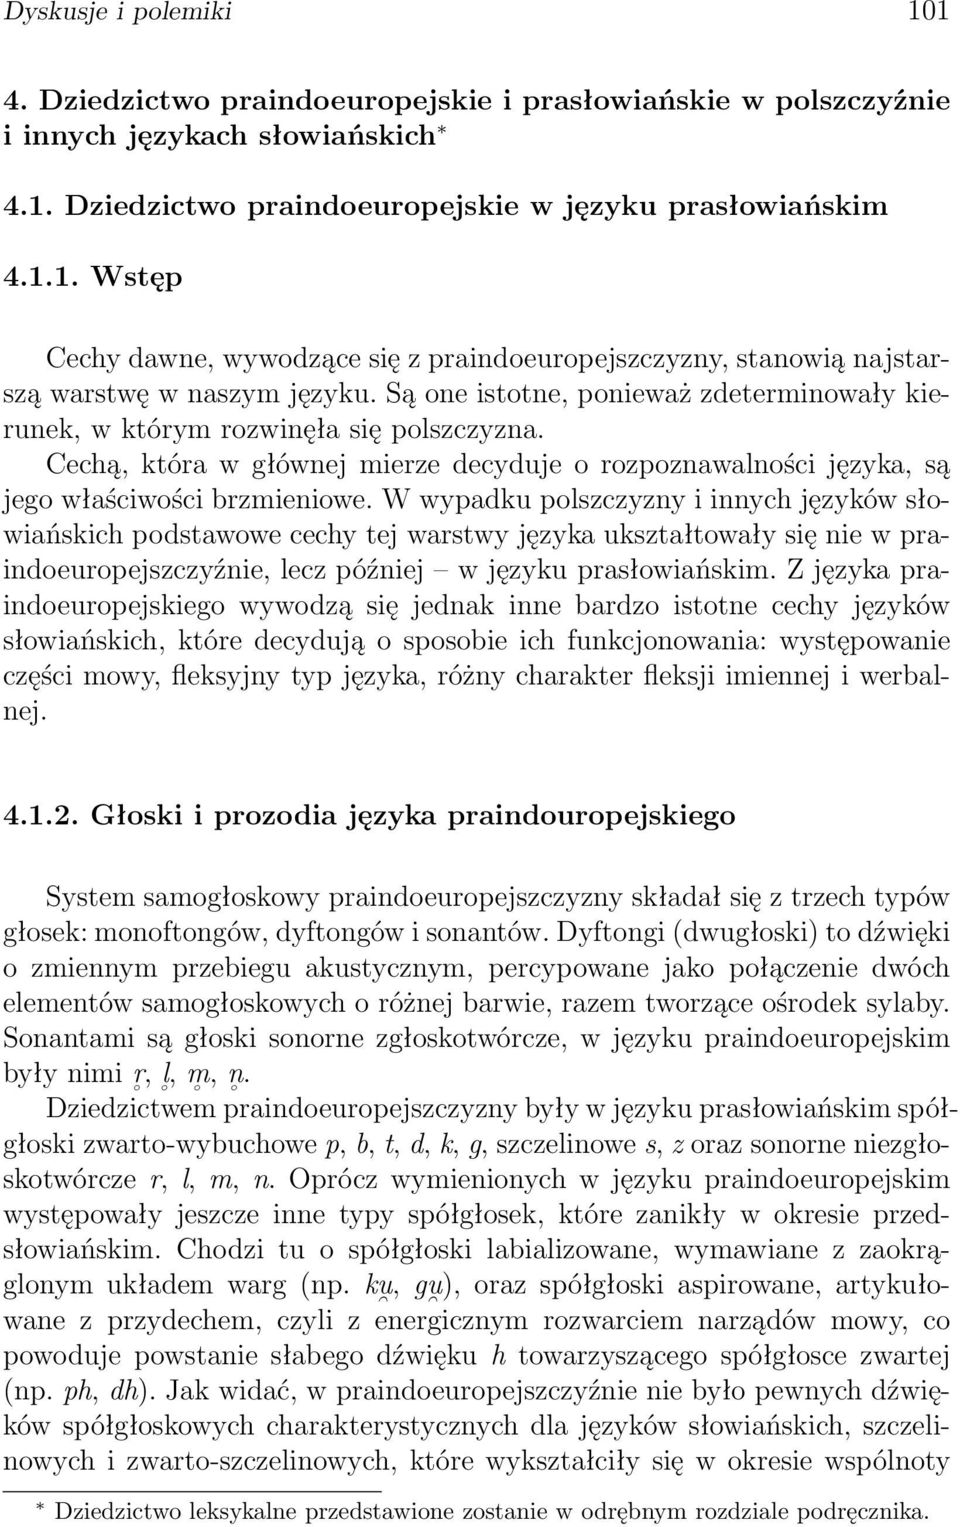 W wypadku polszczyzny i innych języków słowiańskich podstawowe cechy tej warstwy języka ukształtowały się nie w praindoeuropejszczyźnie, lecz później w języku prasłowiańskim.